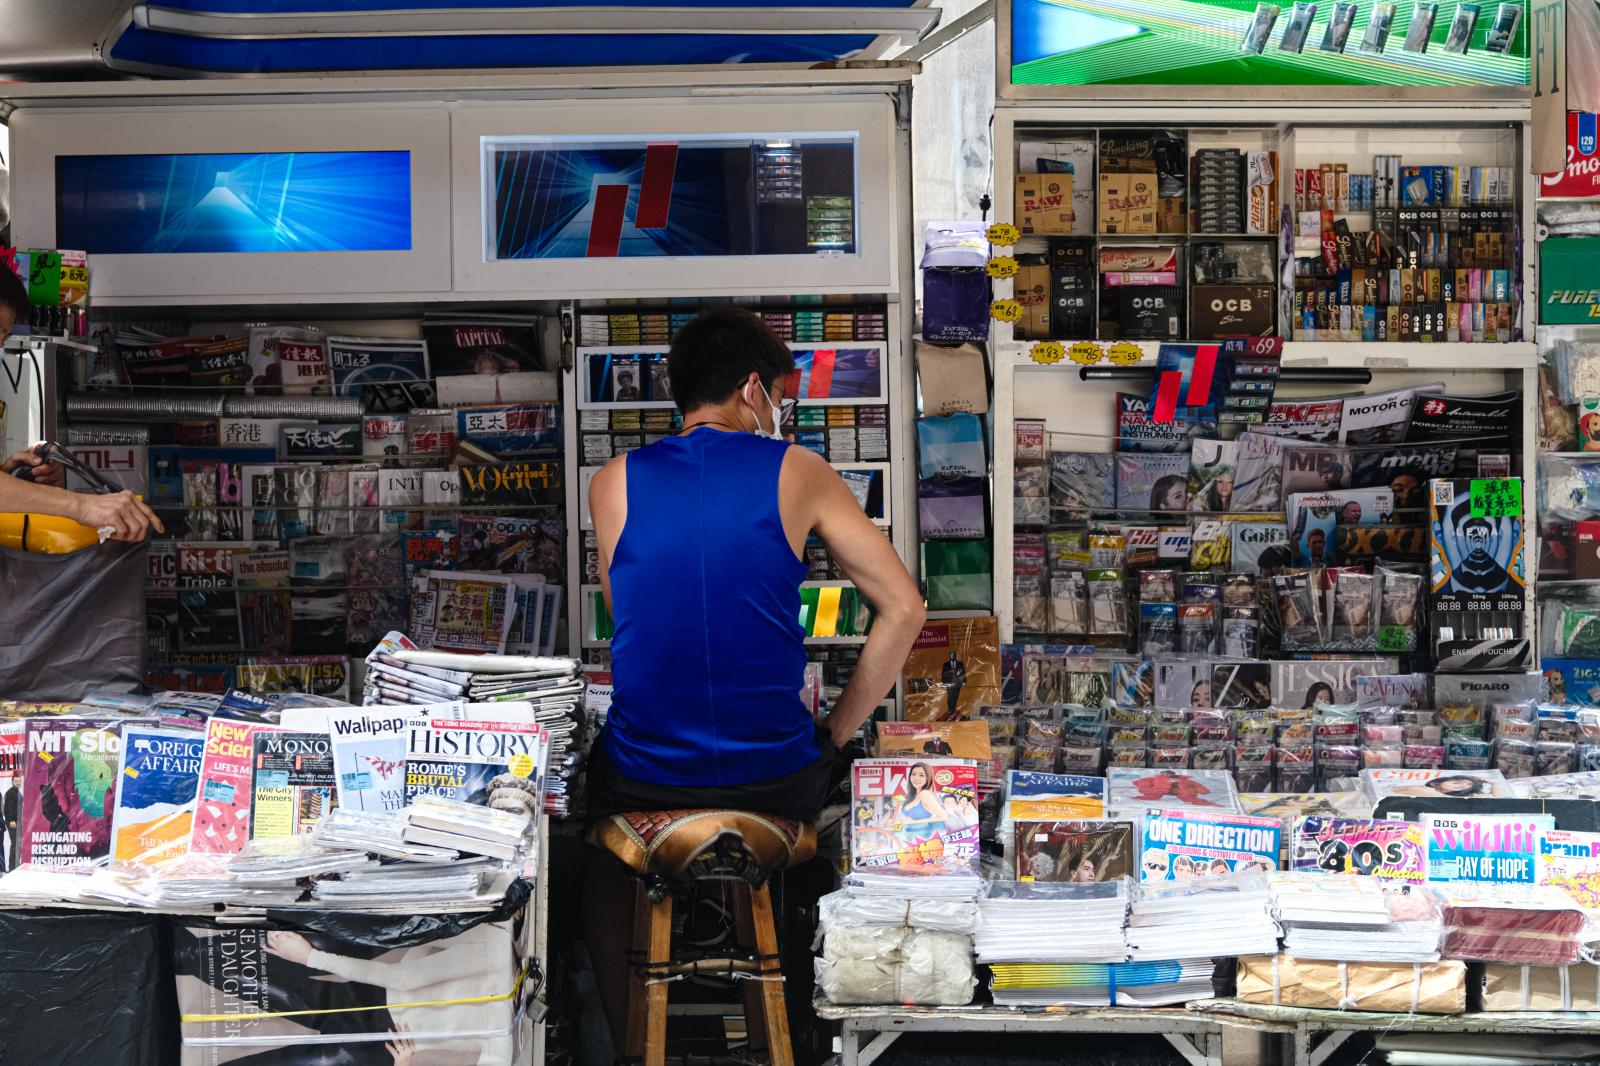 Hong Kong daily life | Buy this image